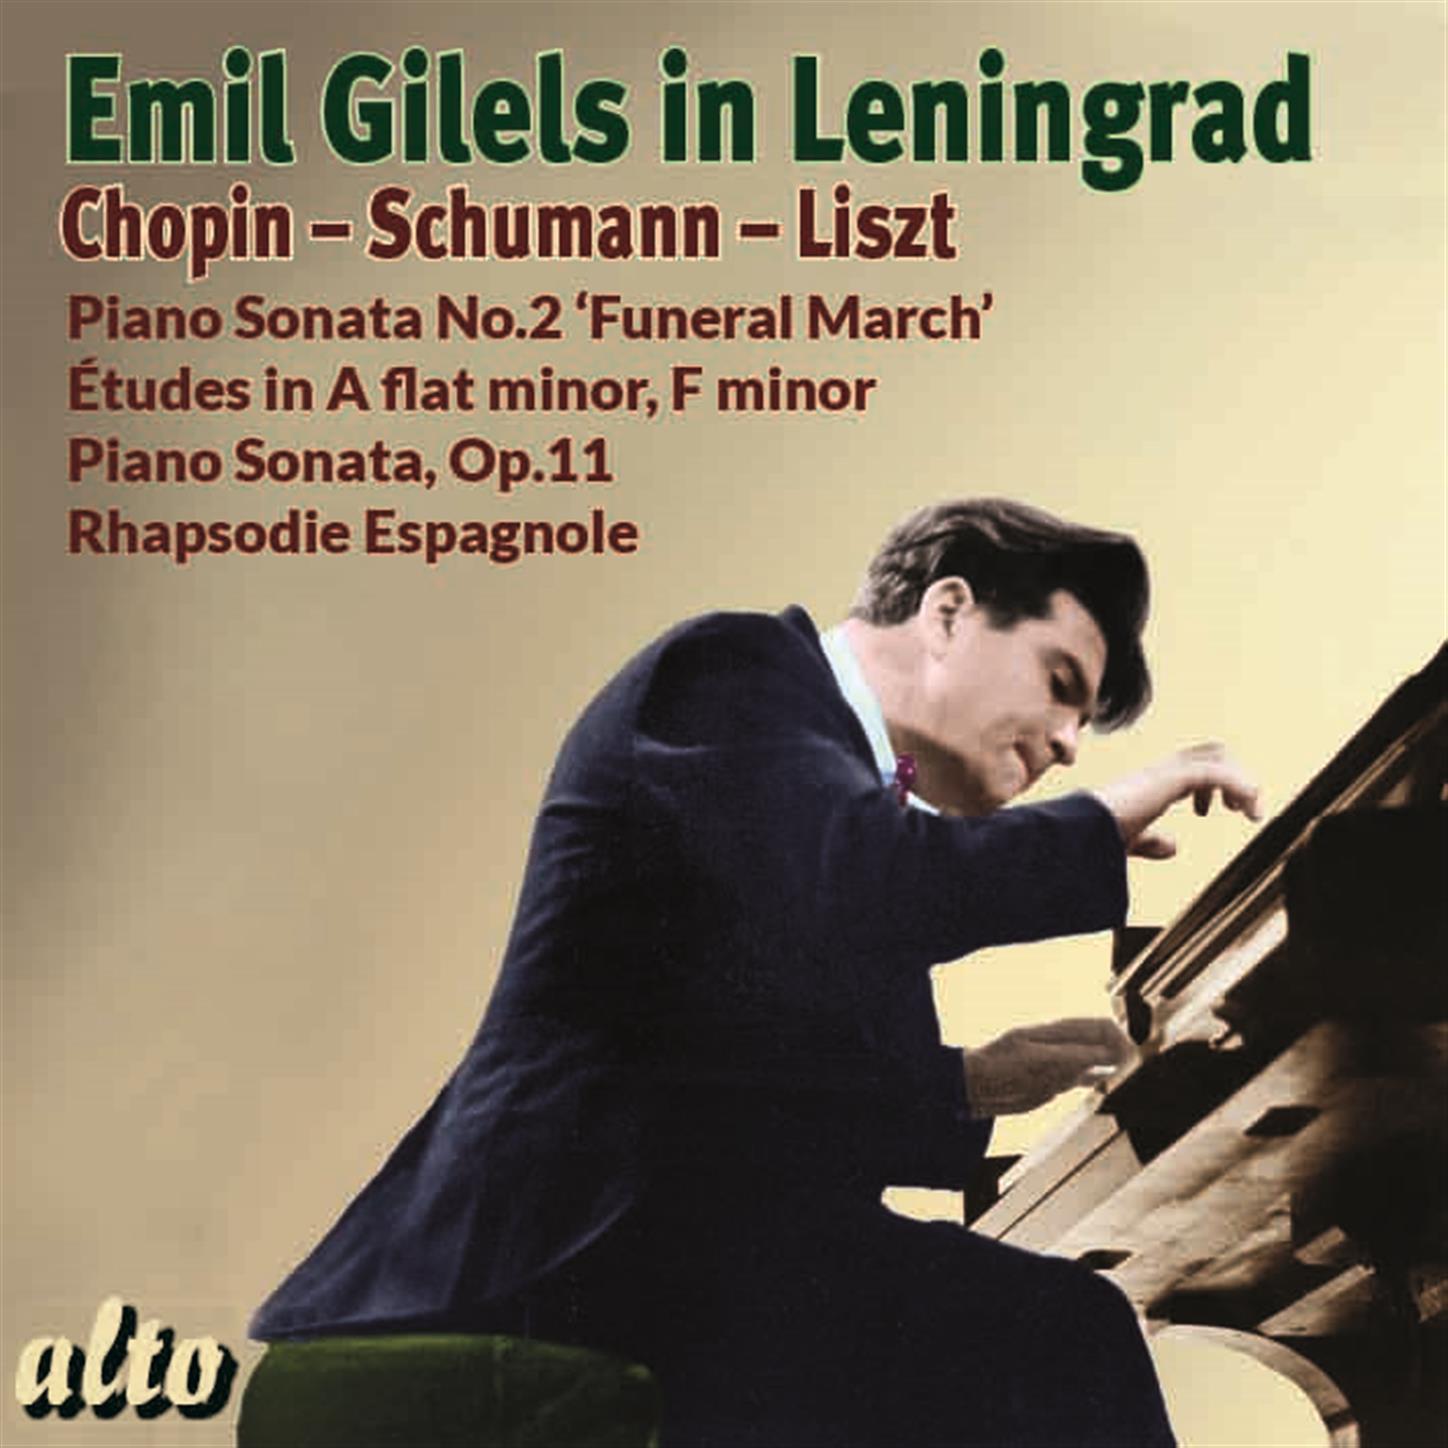 Emil Gilels in Leningrad